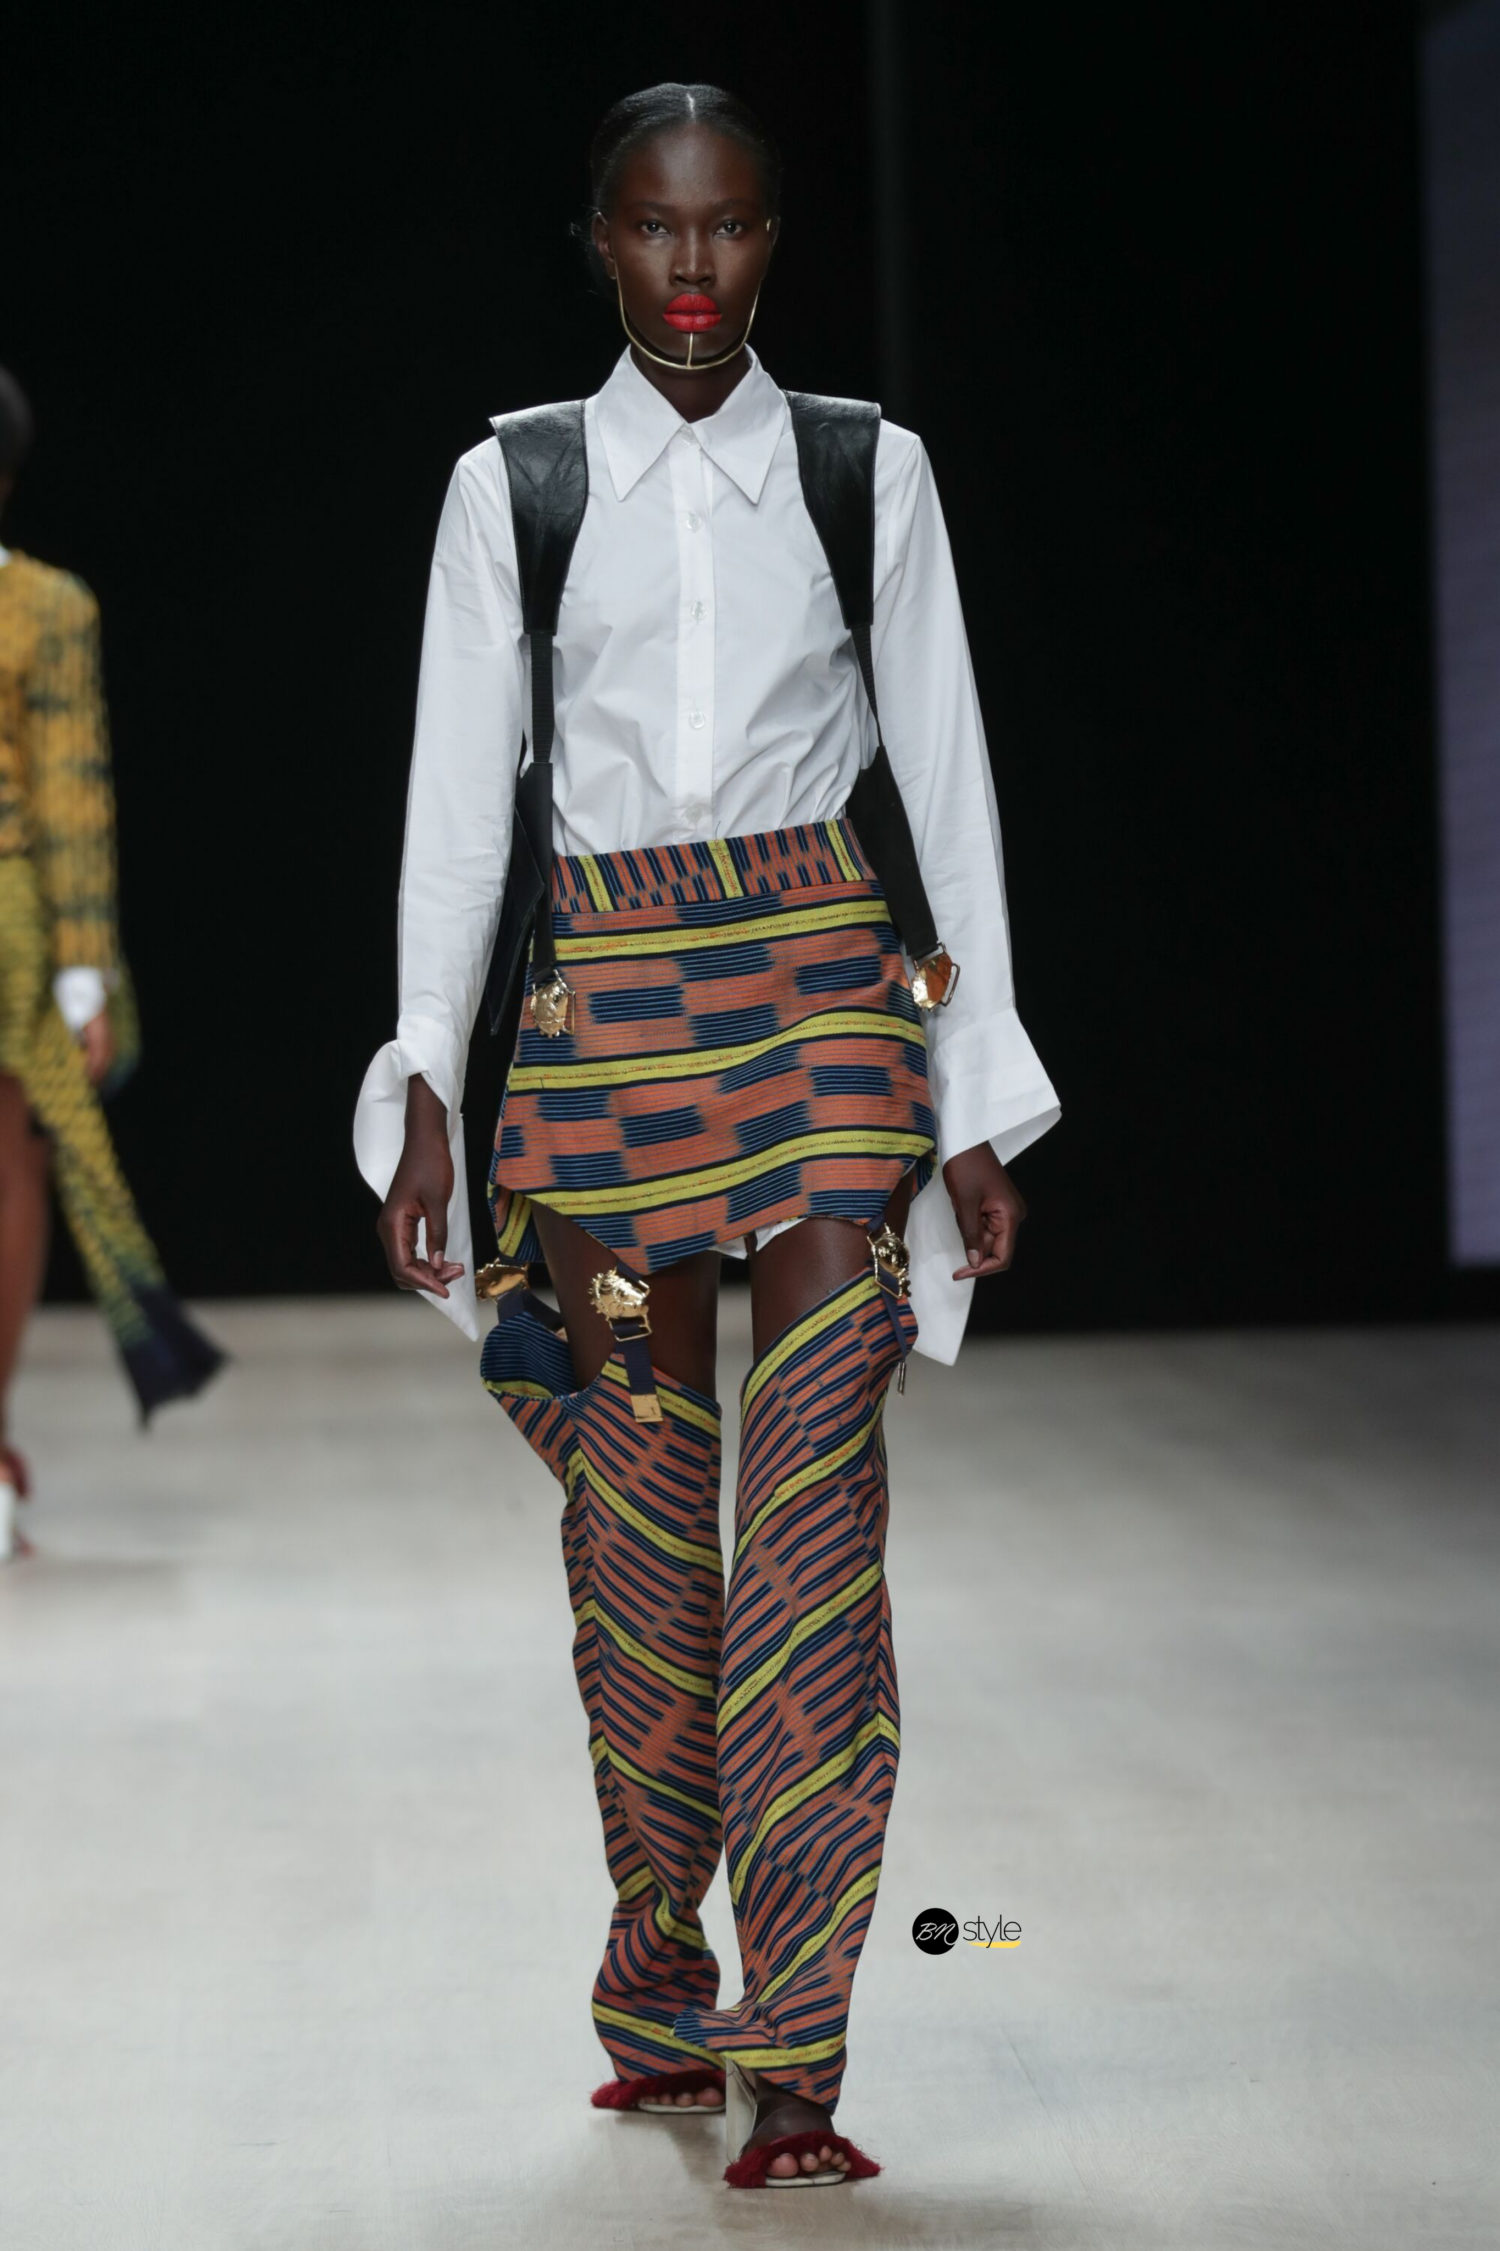 ARISE Fashion Week 2019 | Loza Maleombho | BN Style